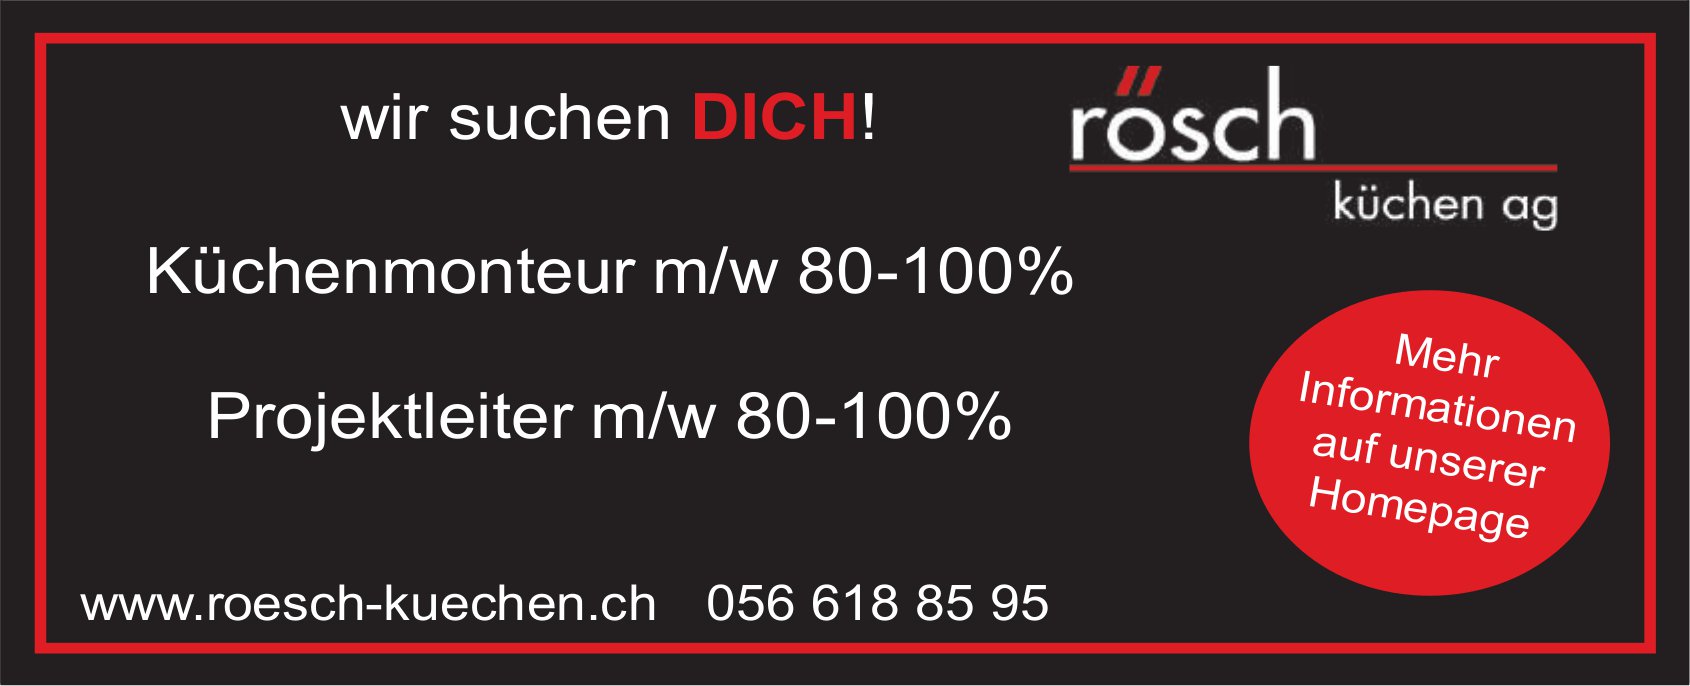 Küchenmonteur m/w 80-100% und Projektsleiter m/w 80-100%, Rösch Küchen AG, gesucht